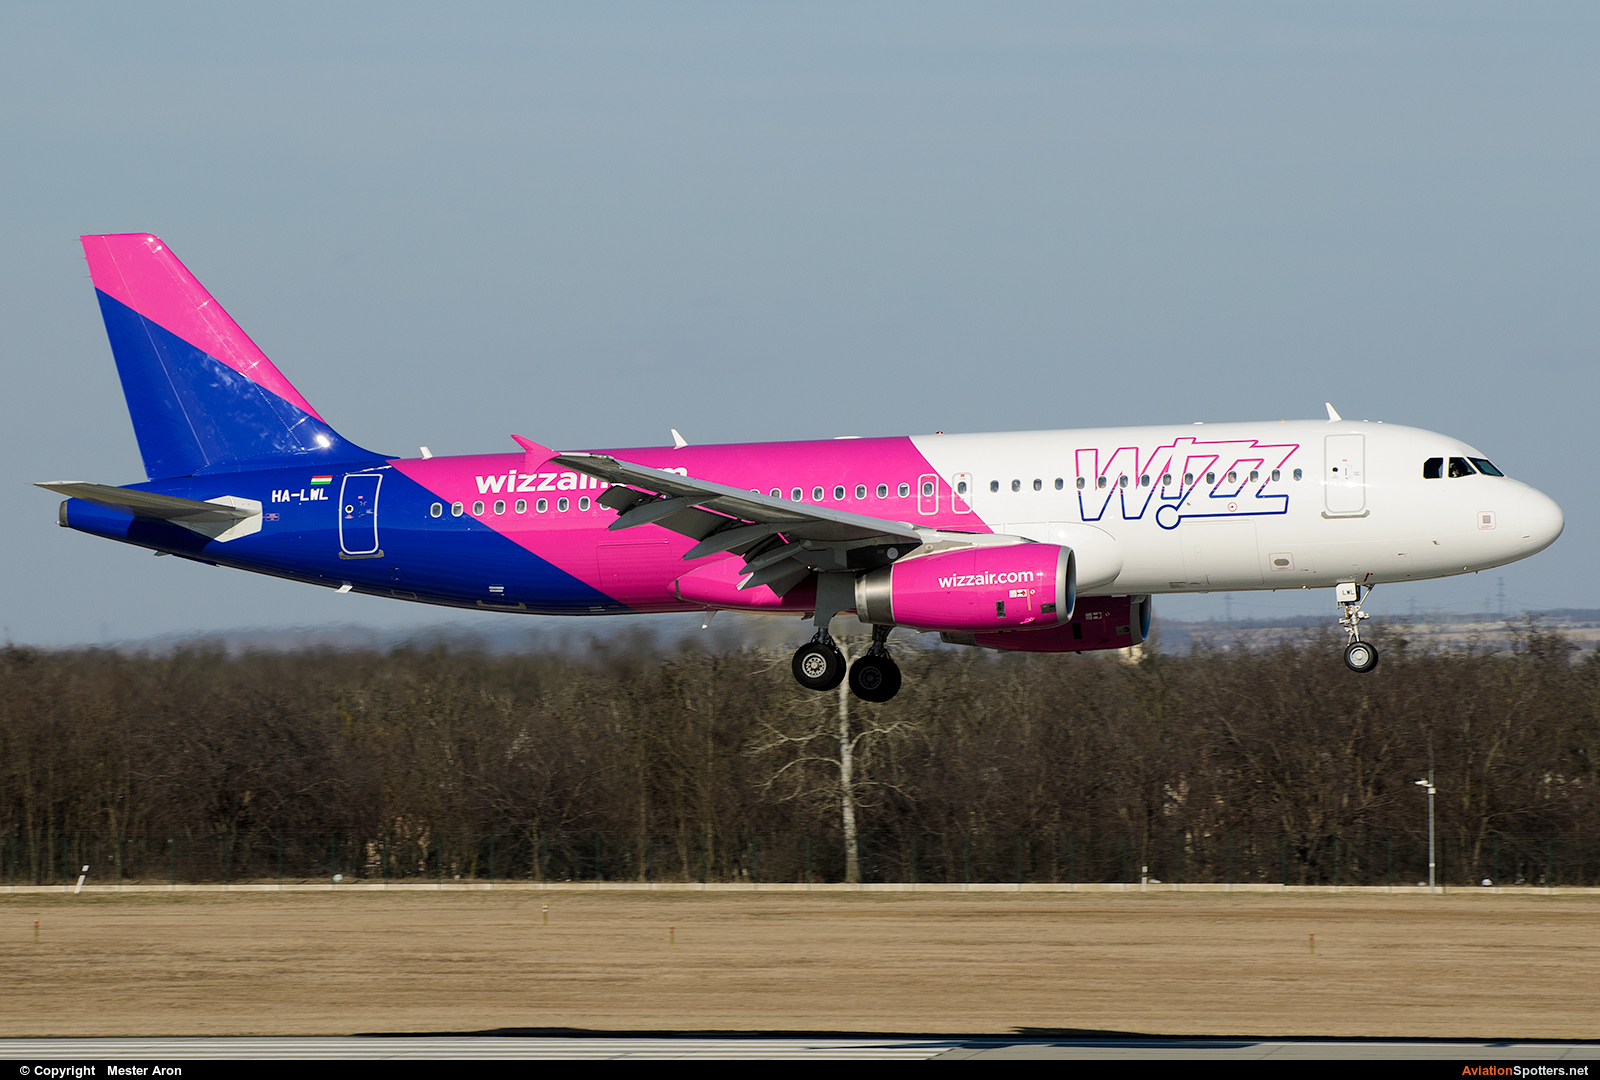 Wizz Air  -  A320-232  (HA-LWL) By Mester Aron (MesterAron)